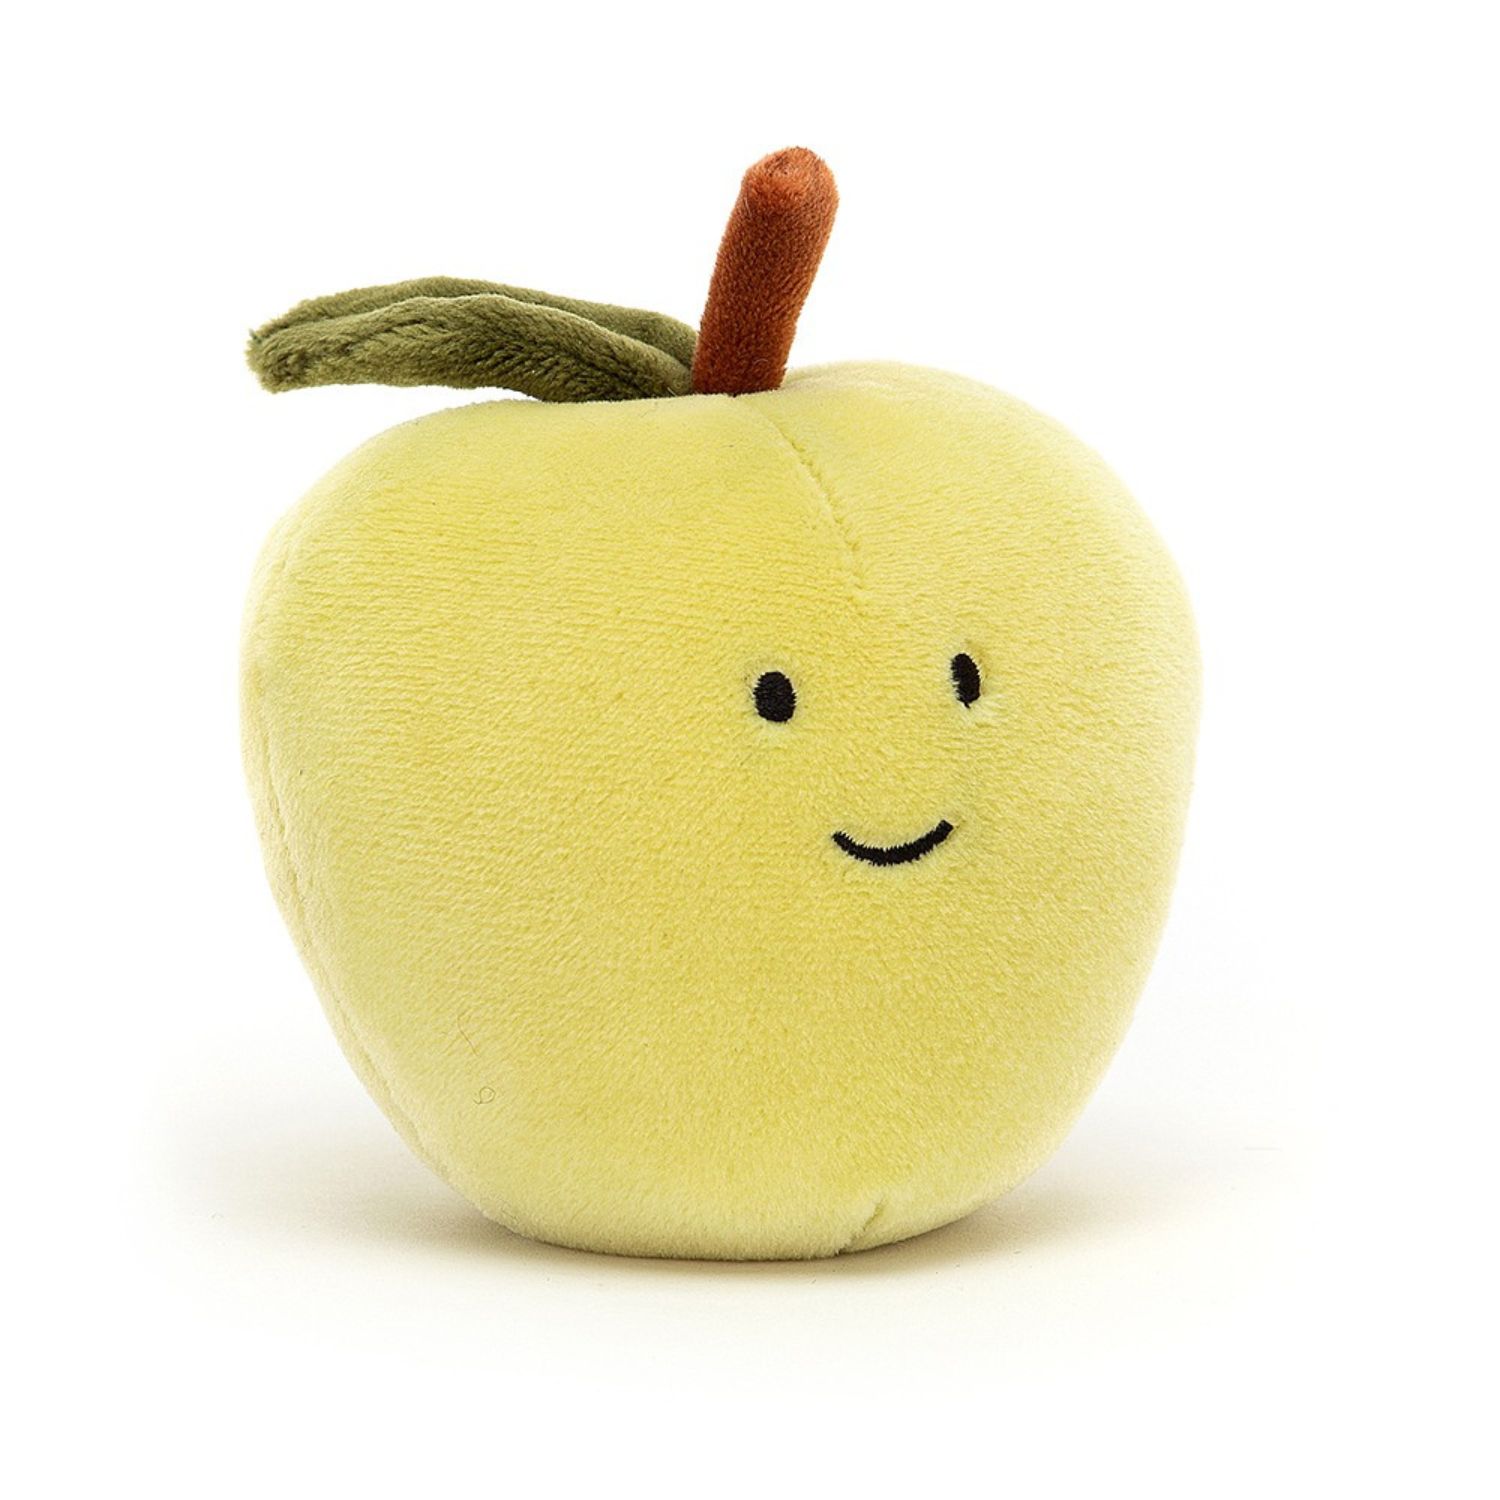 https://www.english-heritageshop.org.uk/media/catalog/product/a/p/apple_plush_toy_508553.jpg